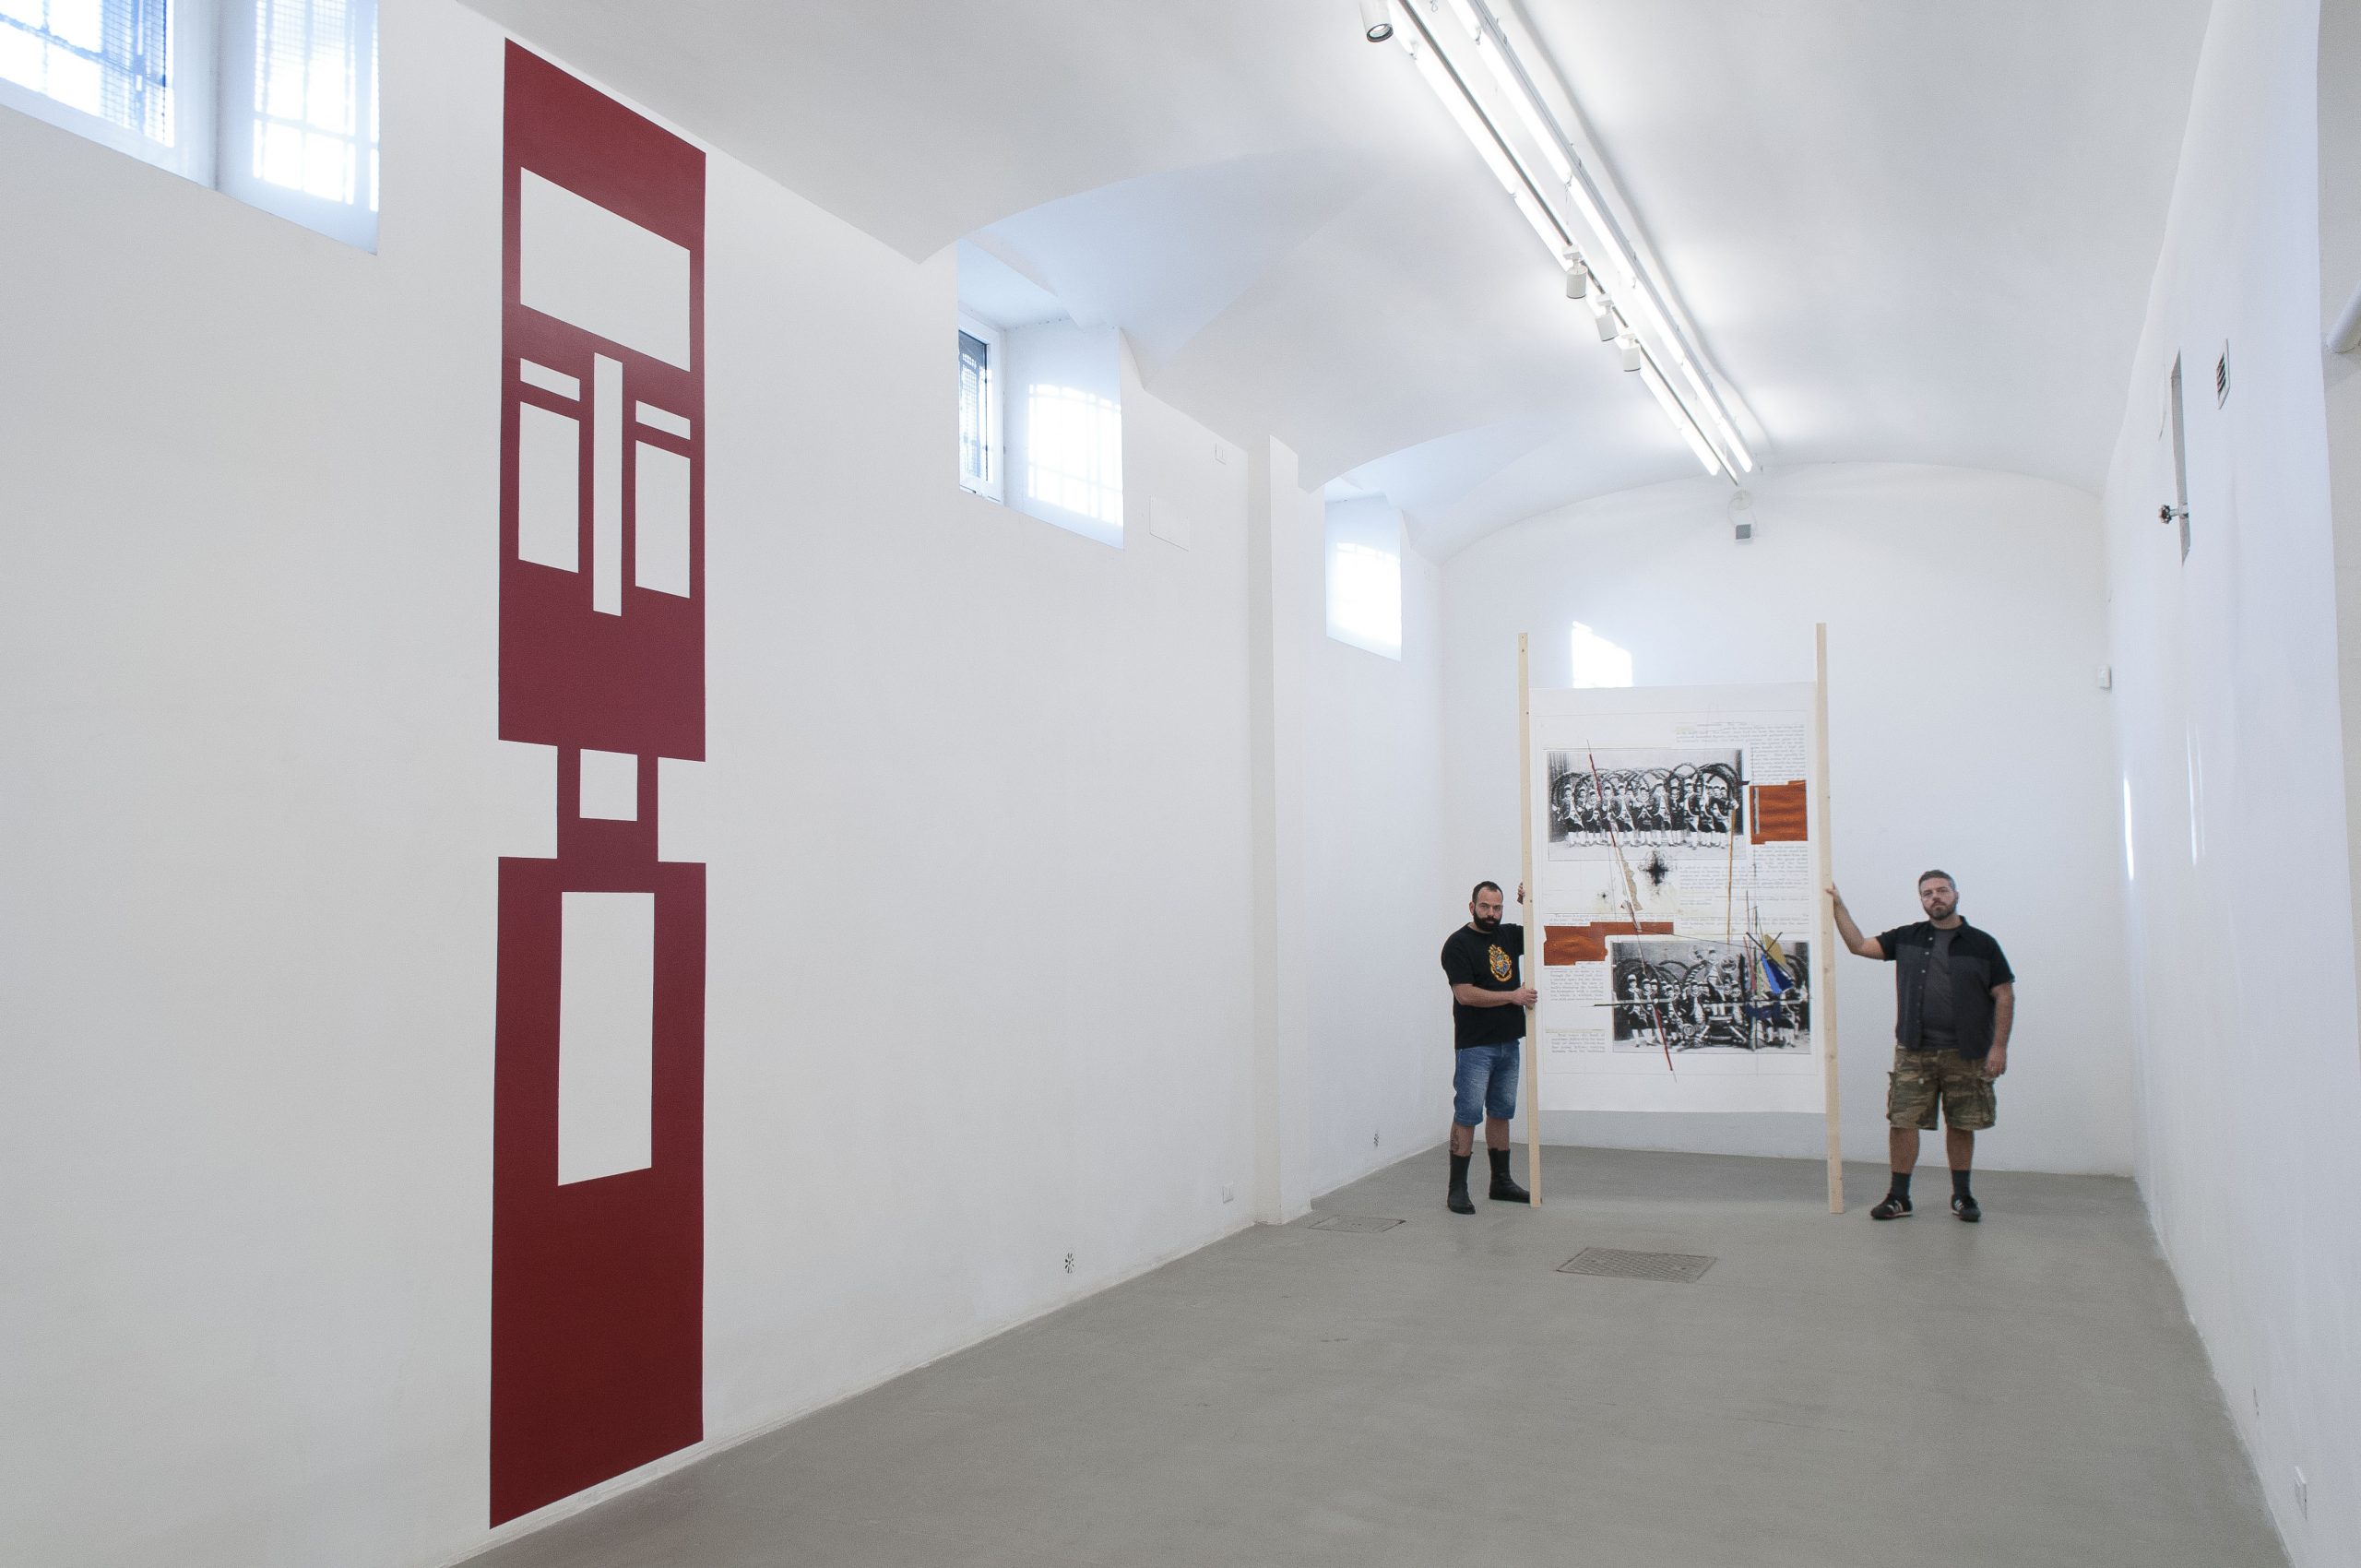 Seb Patane, The Foreigners Stand Still. Installation view at Fondazione Giuliani, photo by Giorgio Benni